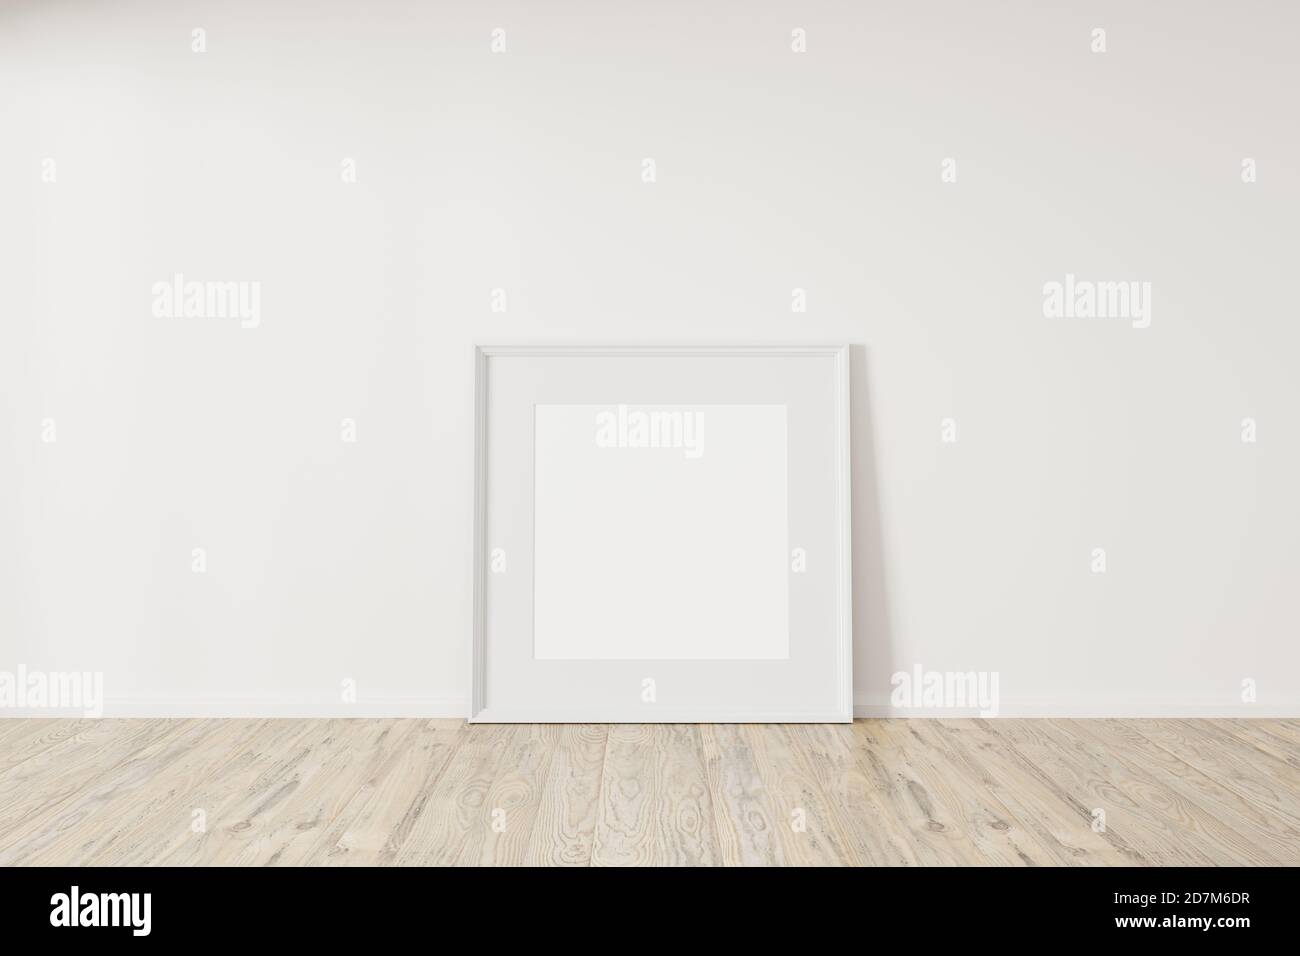 Horizontall struttura in legno mock up. Poster in legno su pavimento in legno con parete bianca. Illustrazioni 3d con cornice orizzontale. Foto Stock